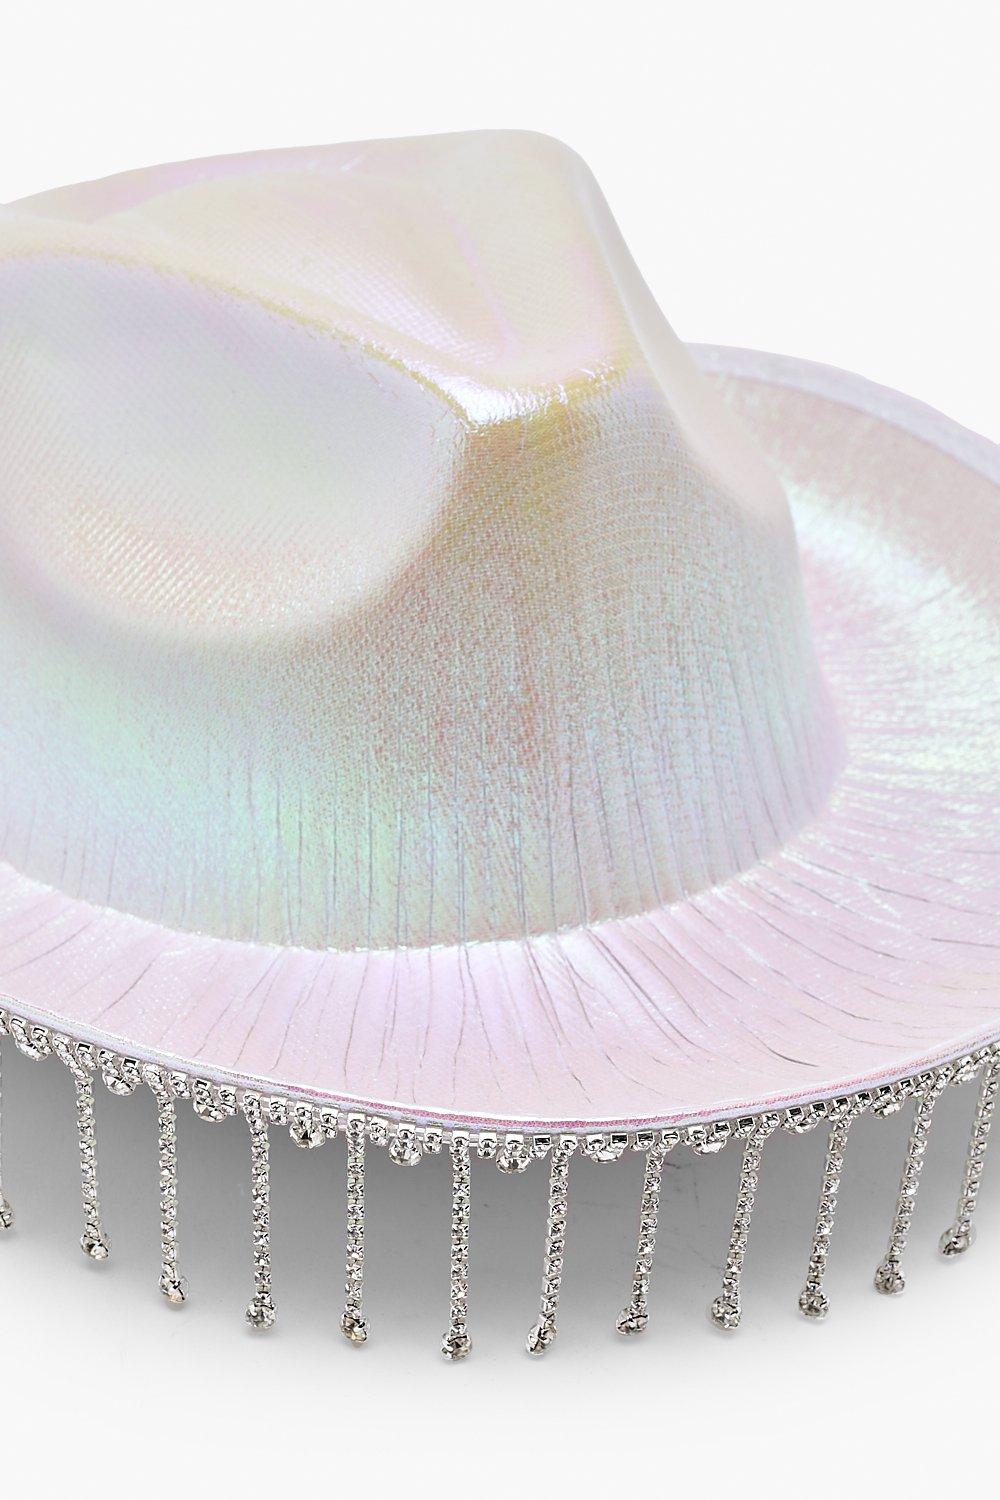 Neon Cowgirl Hut mit Strass-Fransen - Glitzer Holografischer Cowboyhut für  Damen, perfekt für Disco Tanz Party Kostüm - Weiß